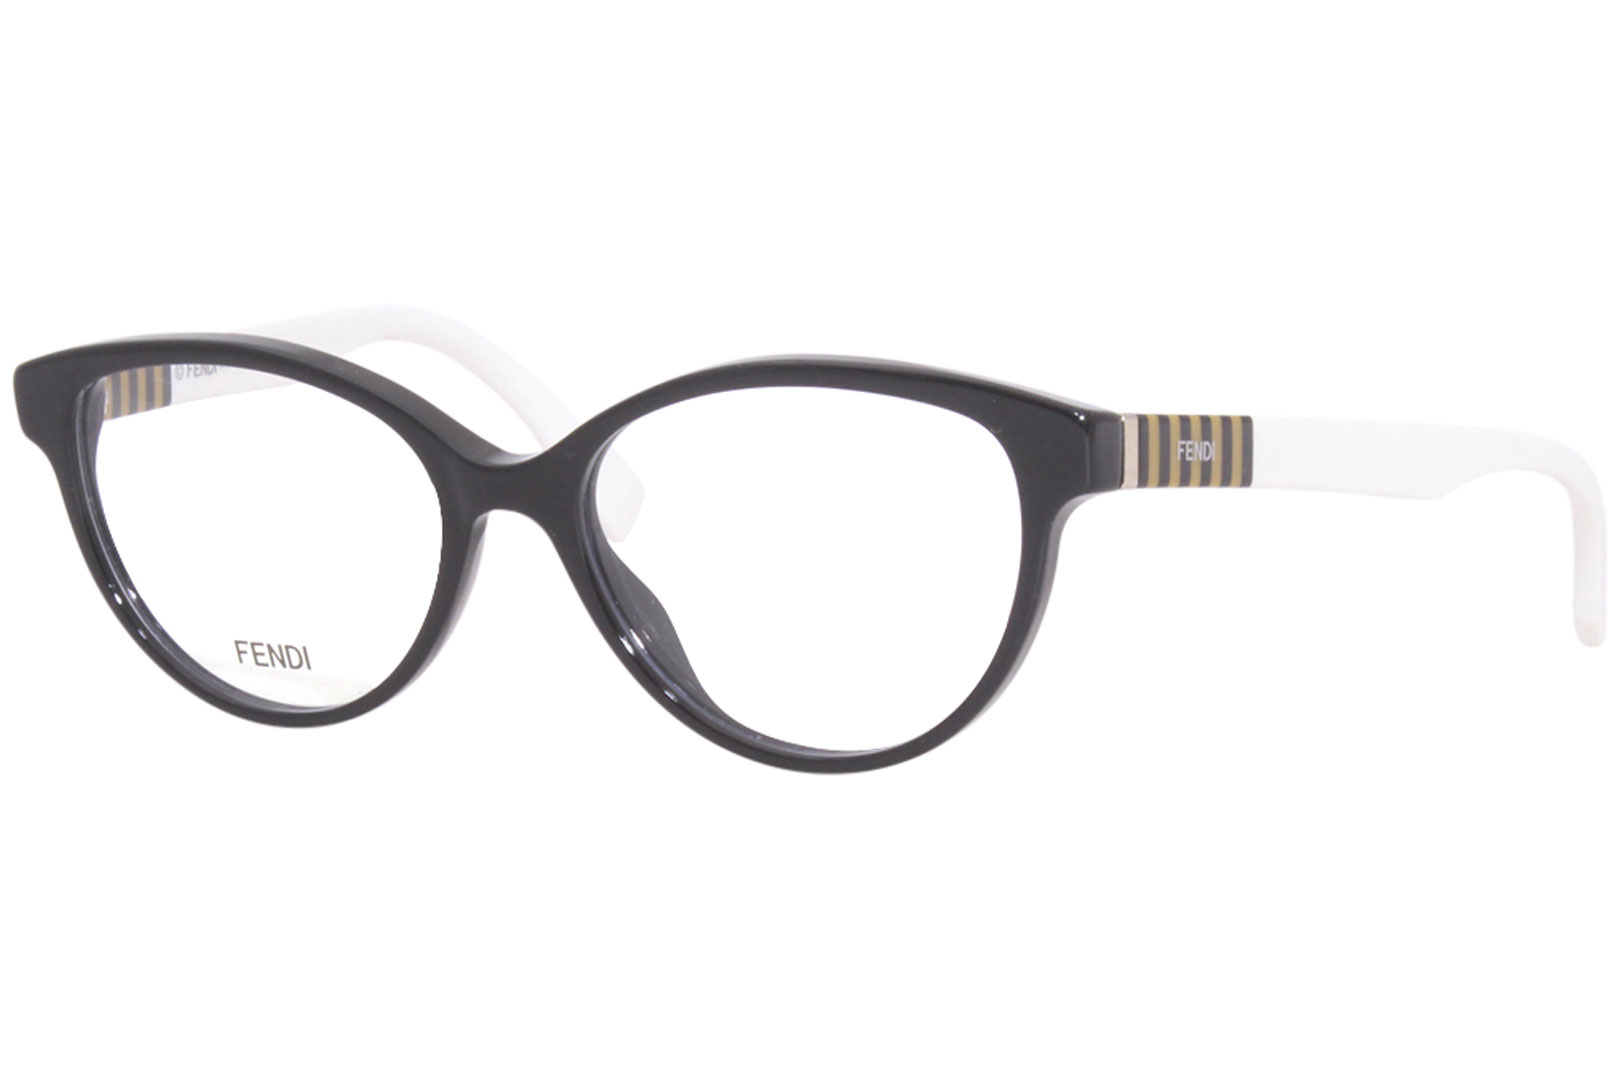 Fendi FF0016 Eyeglasses Women's Full Rim Oval Shape | EyeSpecs.com